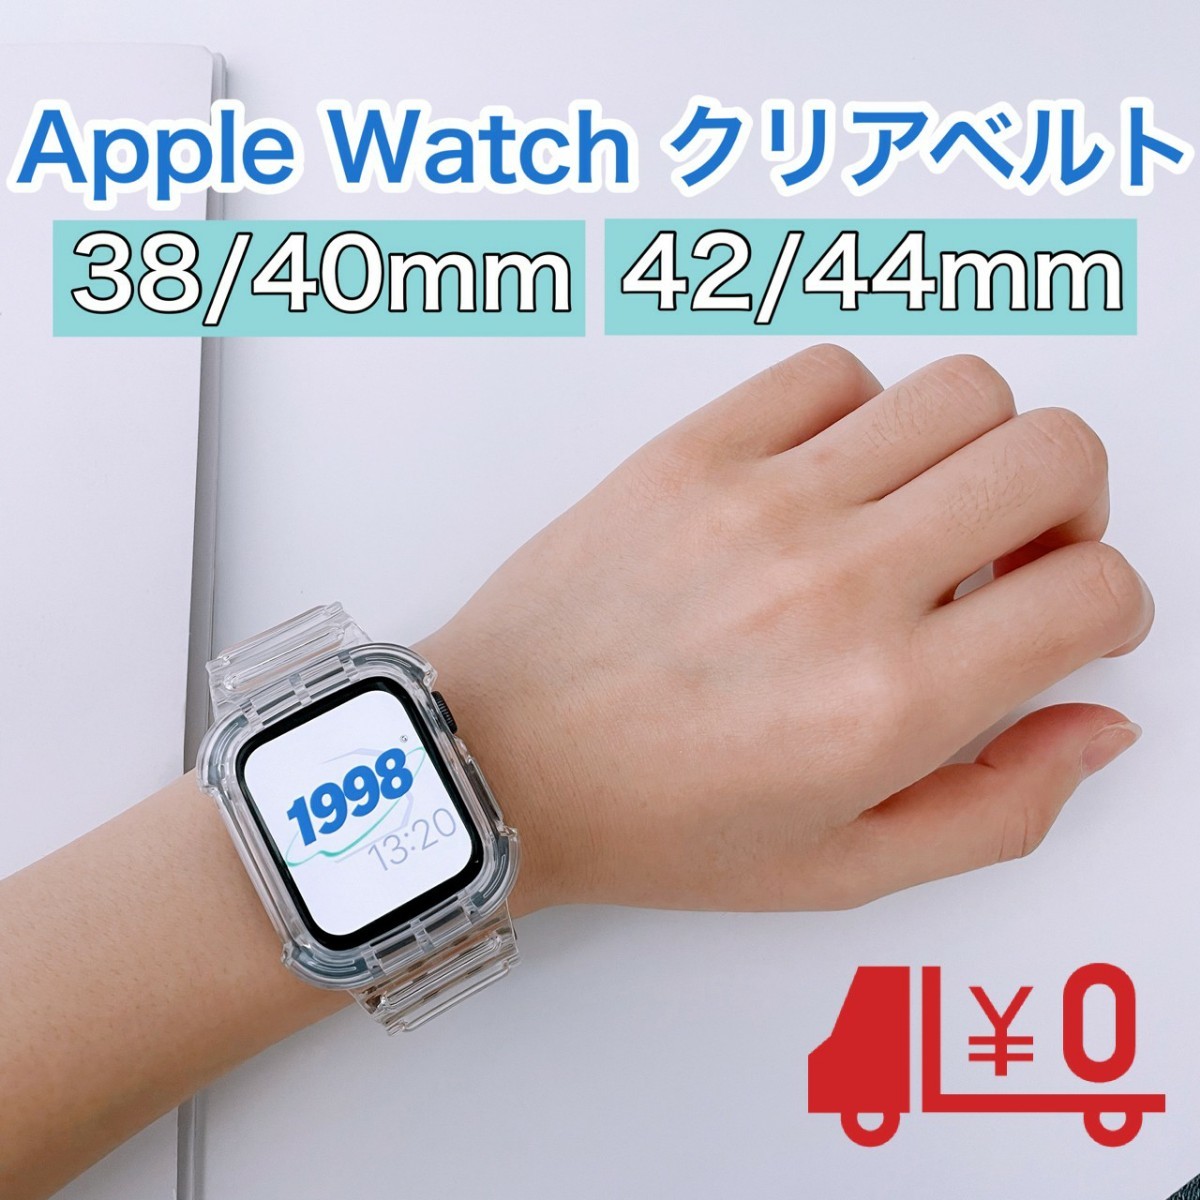 Apple Watch アップルウォッチ ケースカバーシリコン製クリア 40mm